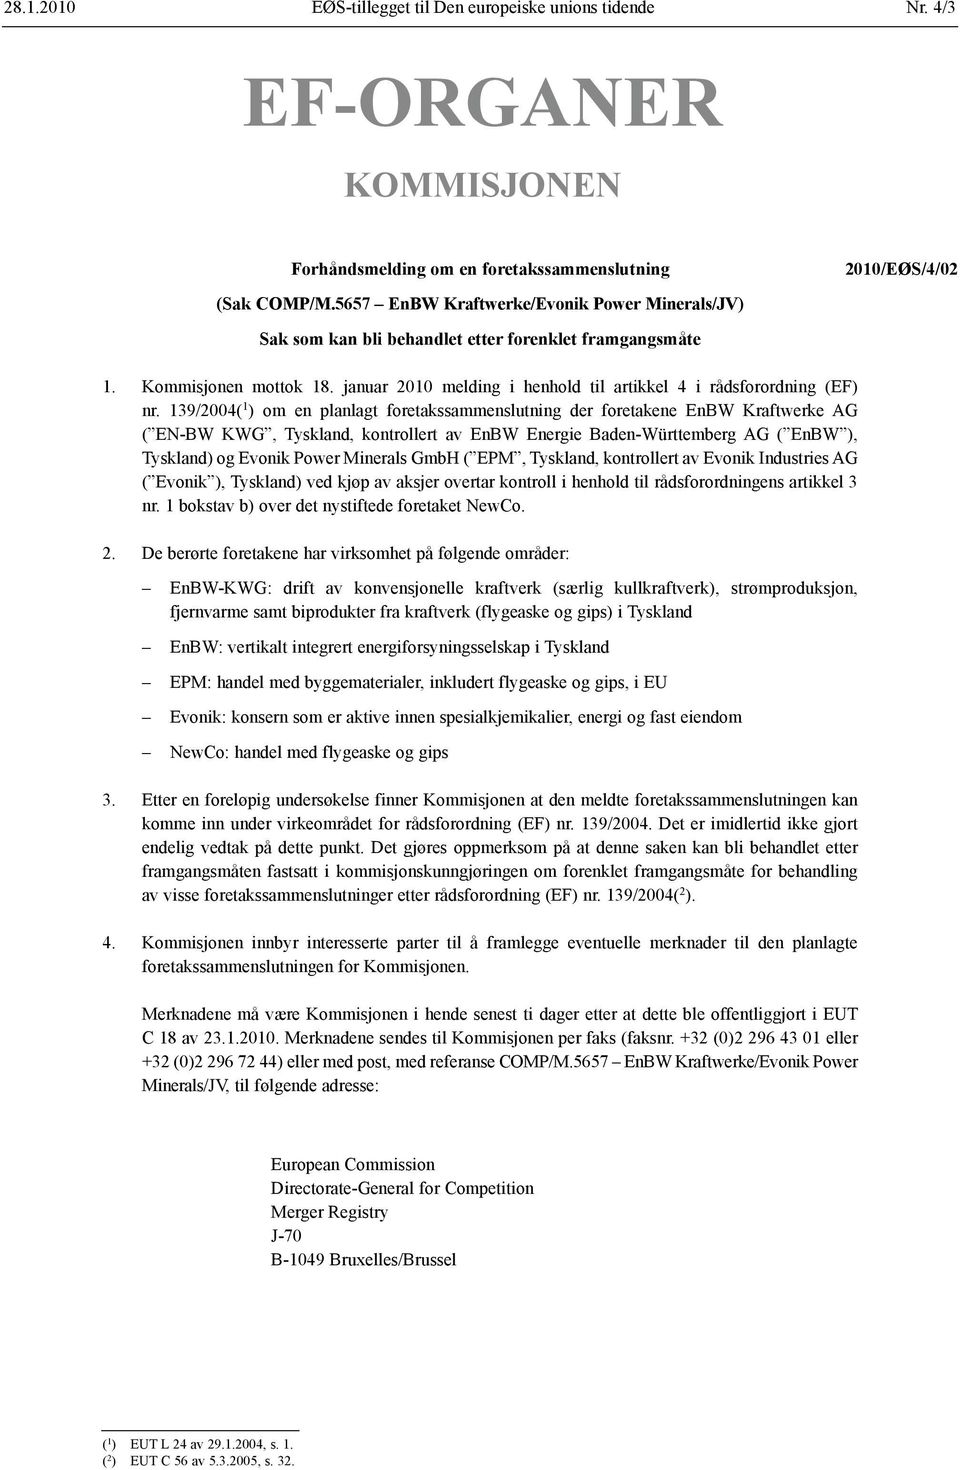 139/2004( 1 ) om en planlagt foretaks sammenslutning der foretakene EnBW Kraftwerke AG ( EN-BW KWG, Tyskland, kontrollert av EnBW Energie Baden-Württemberg AG ( EnBW ), Tyskland) og Evonik Power